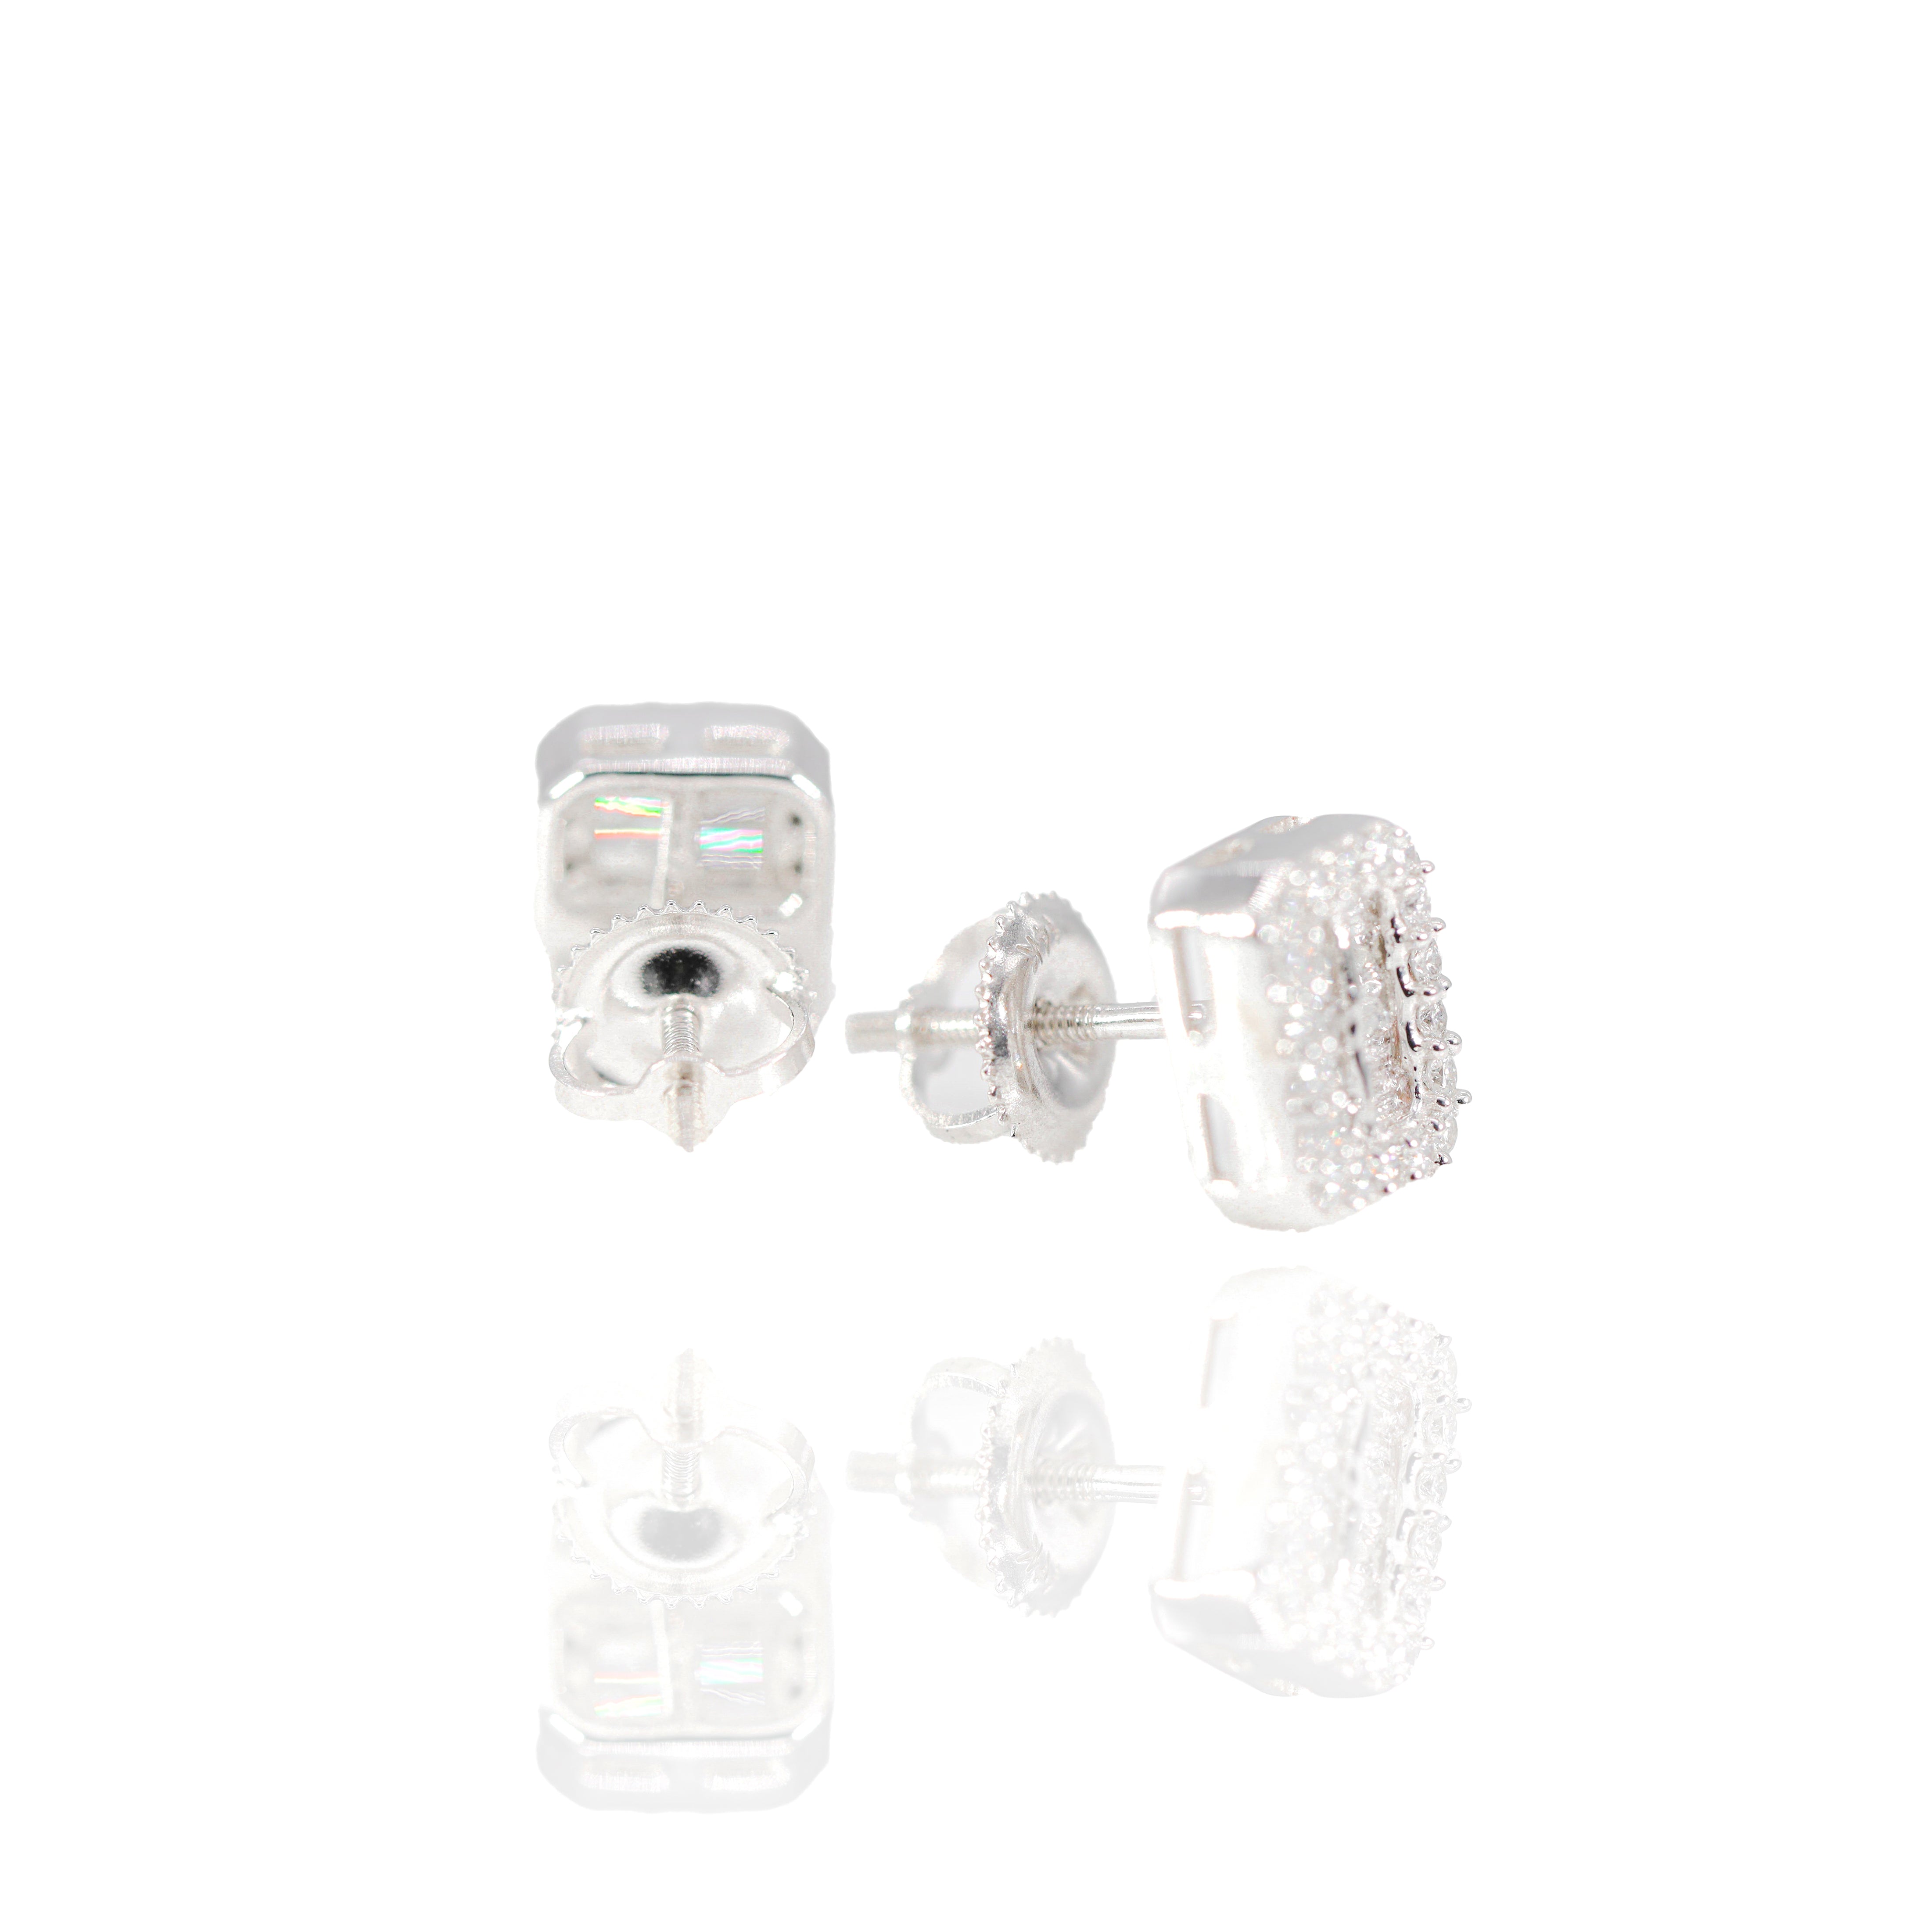 2 Row Baguette Center Diamond Earrings